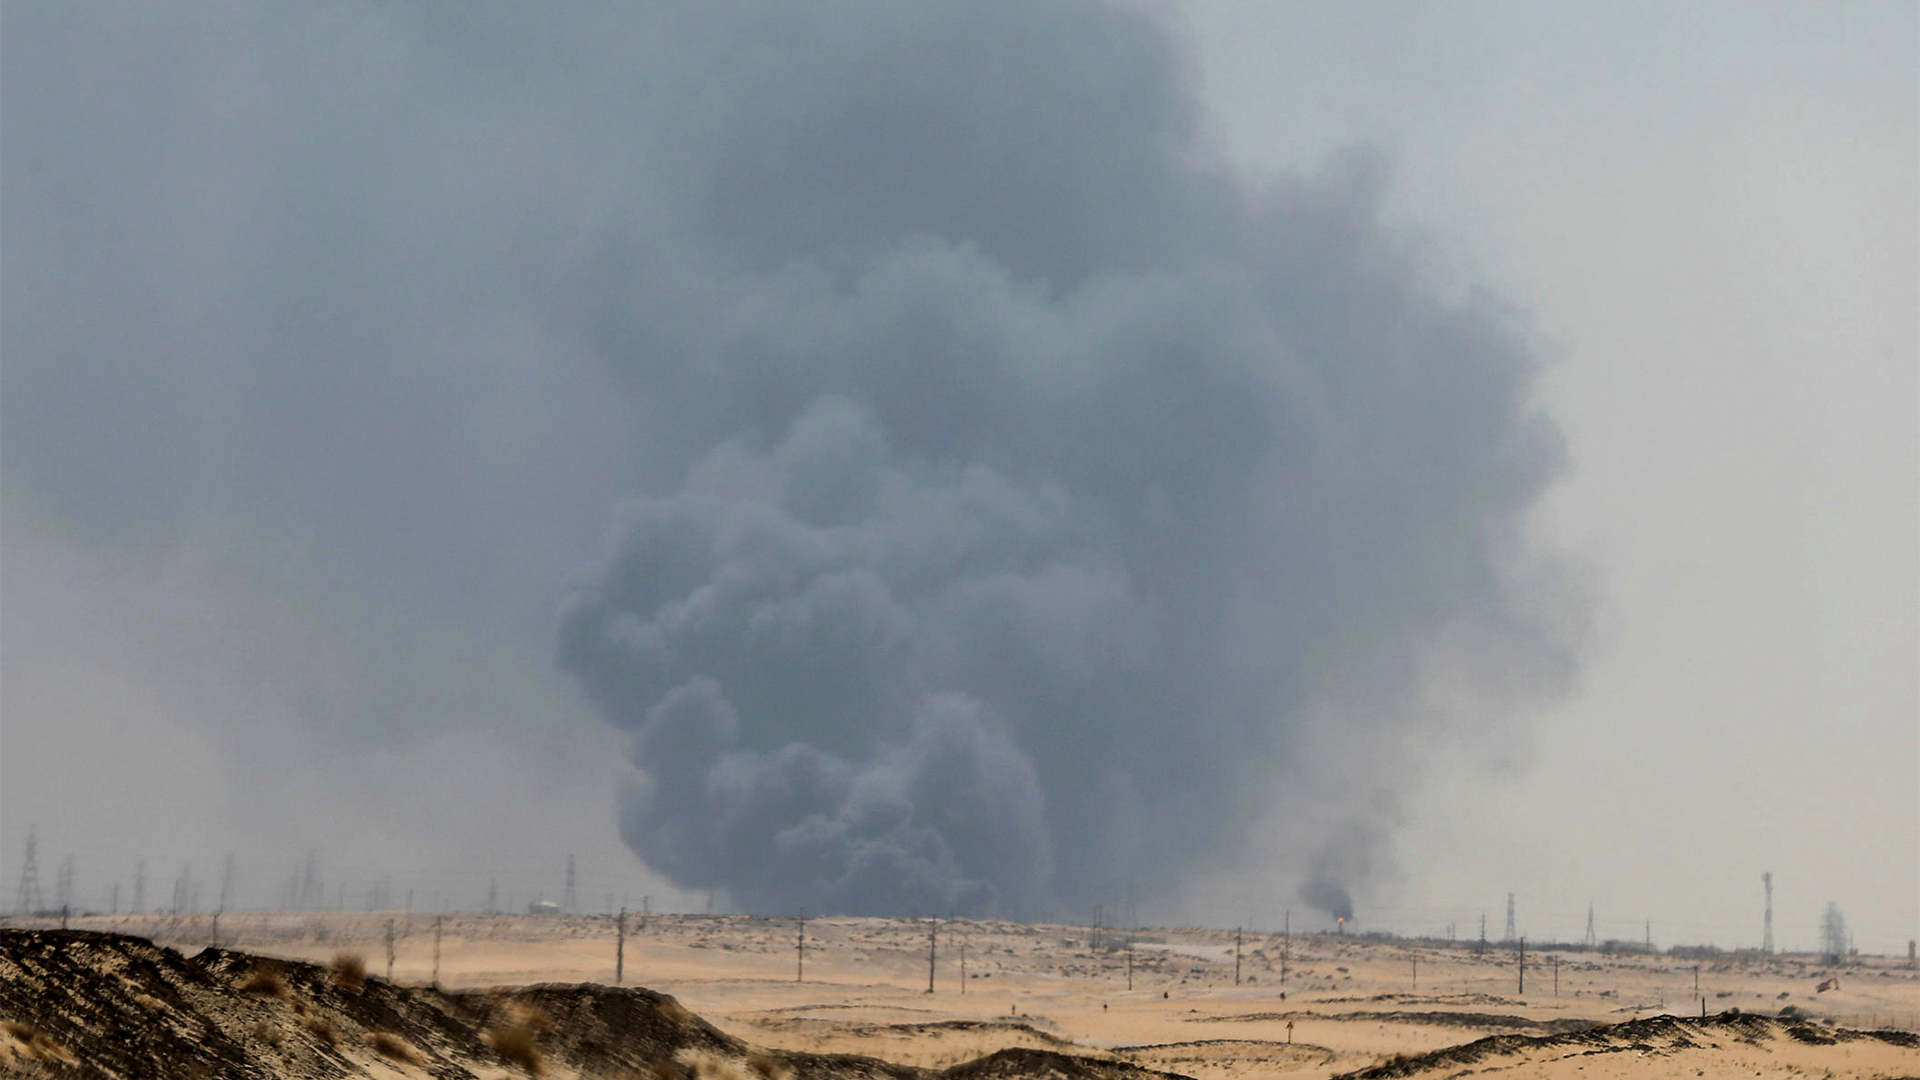 Rauchschwaden am Himmel nach dem Drohnenangriff auf eine Ölraffinerie